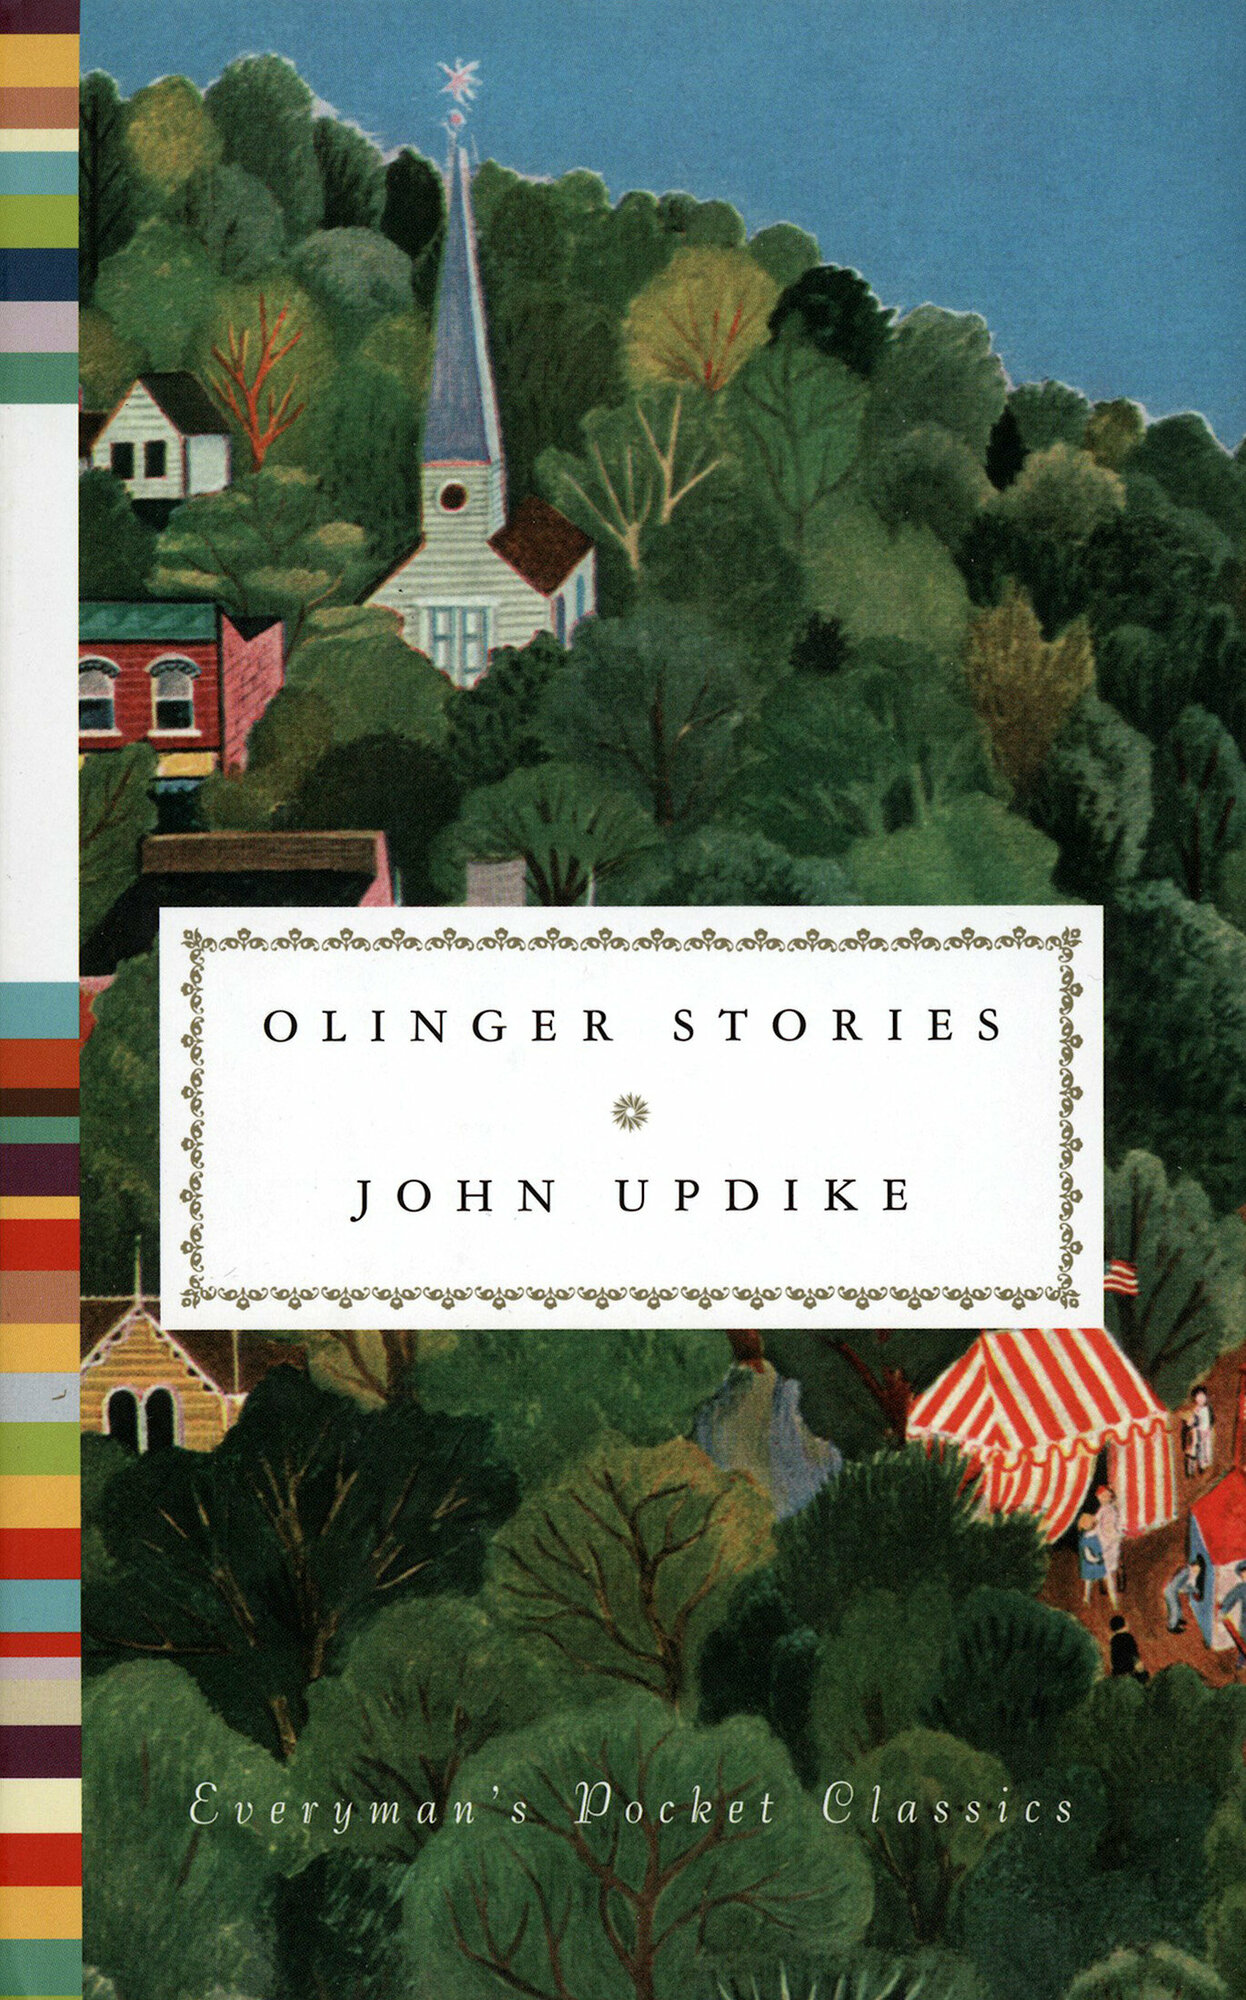 Olinger Stories (Апдайк Джон) - фото №2